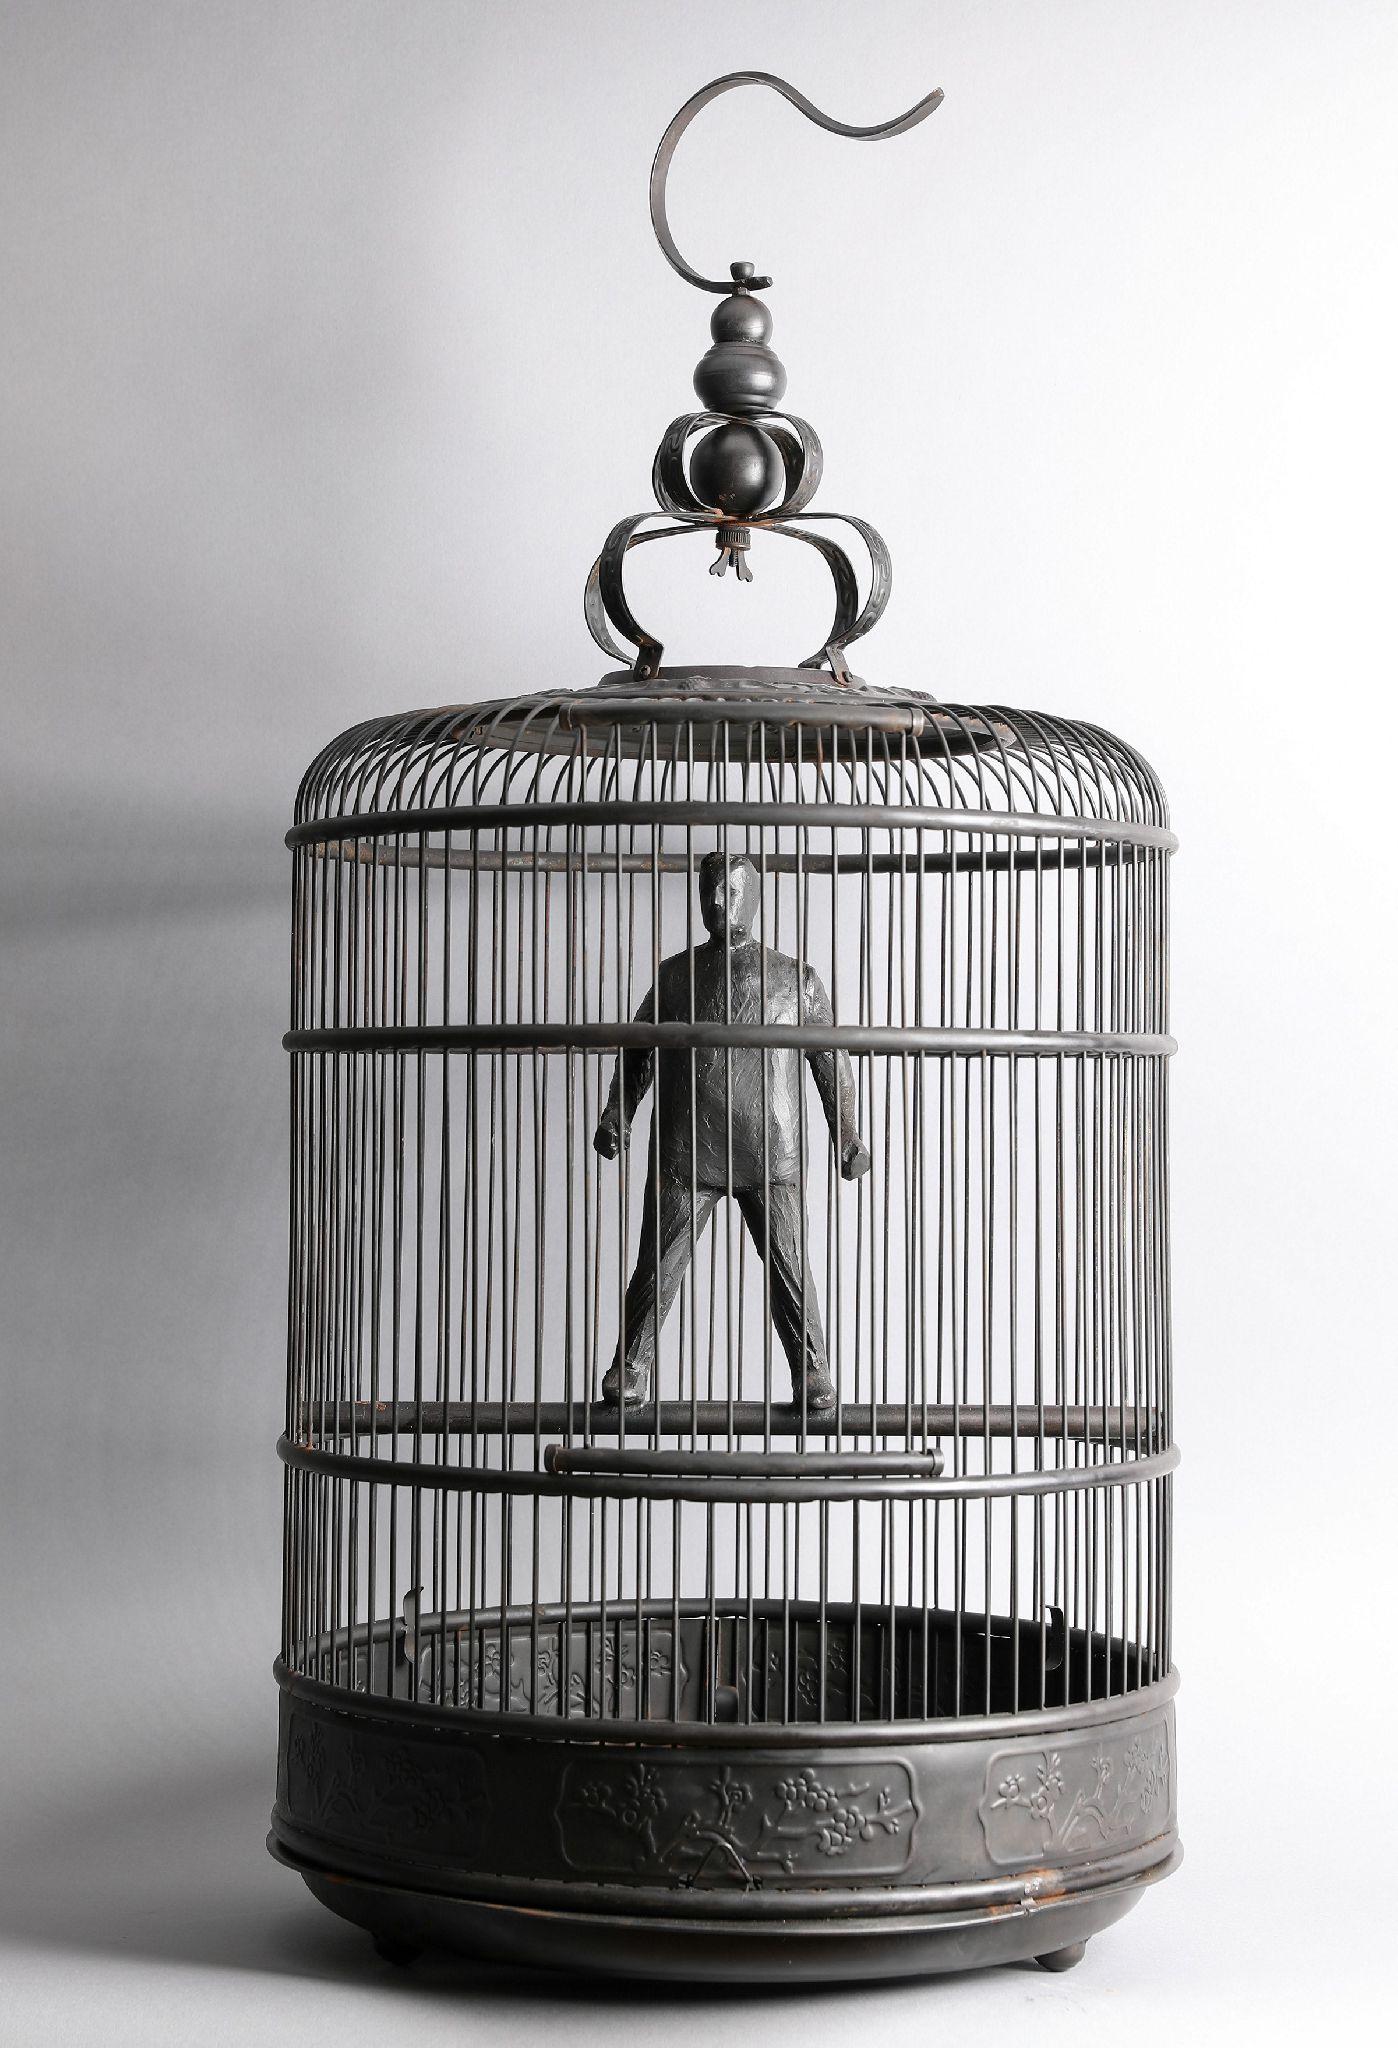 Jim Rennert Figurative Sculpture – Käfig, nicht verkämmt